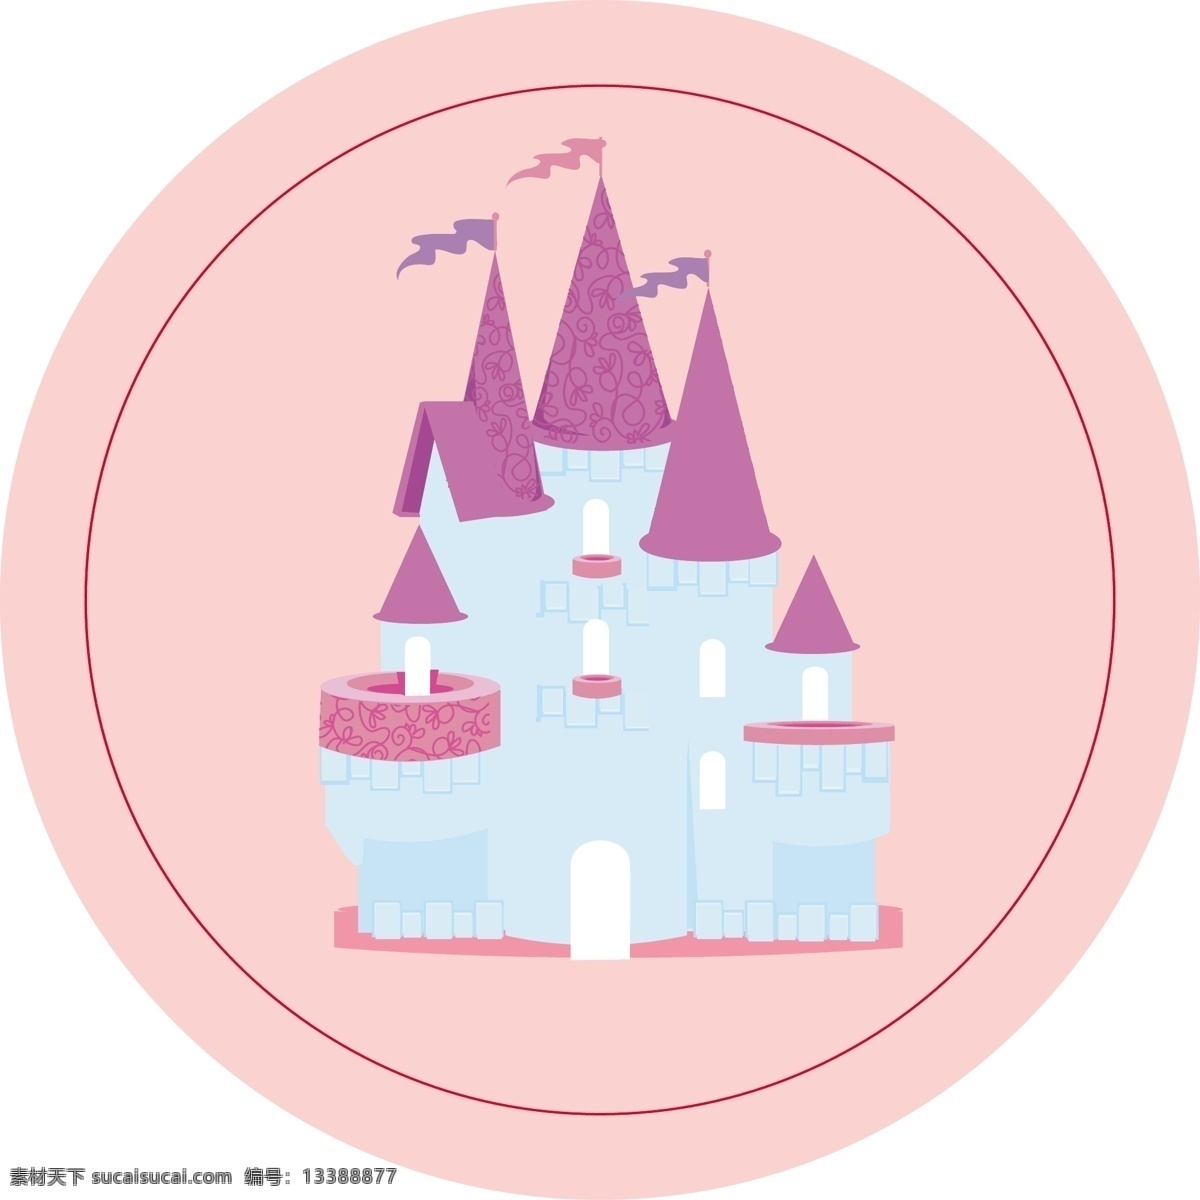 卡通免费下载 城堡 城堡矢量素材 城市建筑 建筑家居 卡通 城堡模板下载 矢量 家居装饰素材